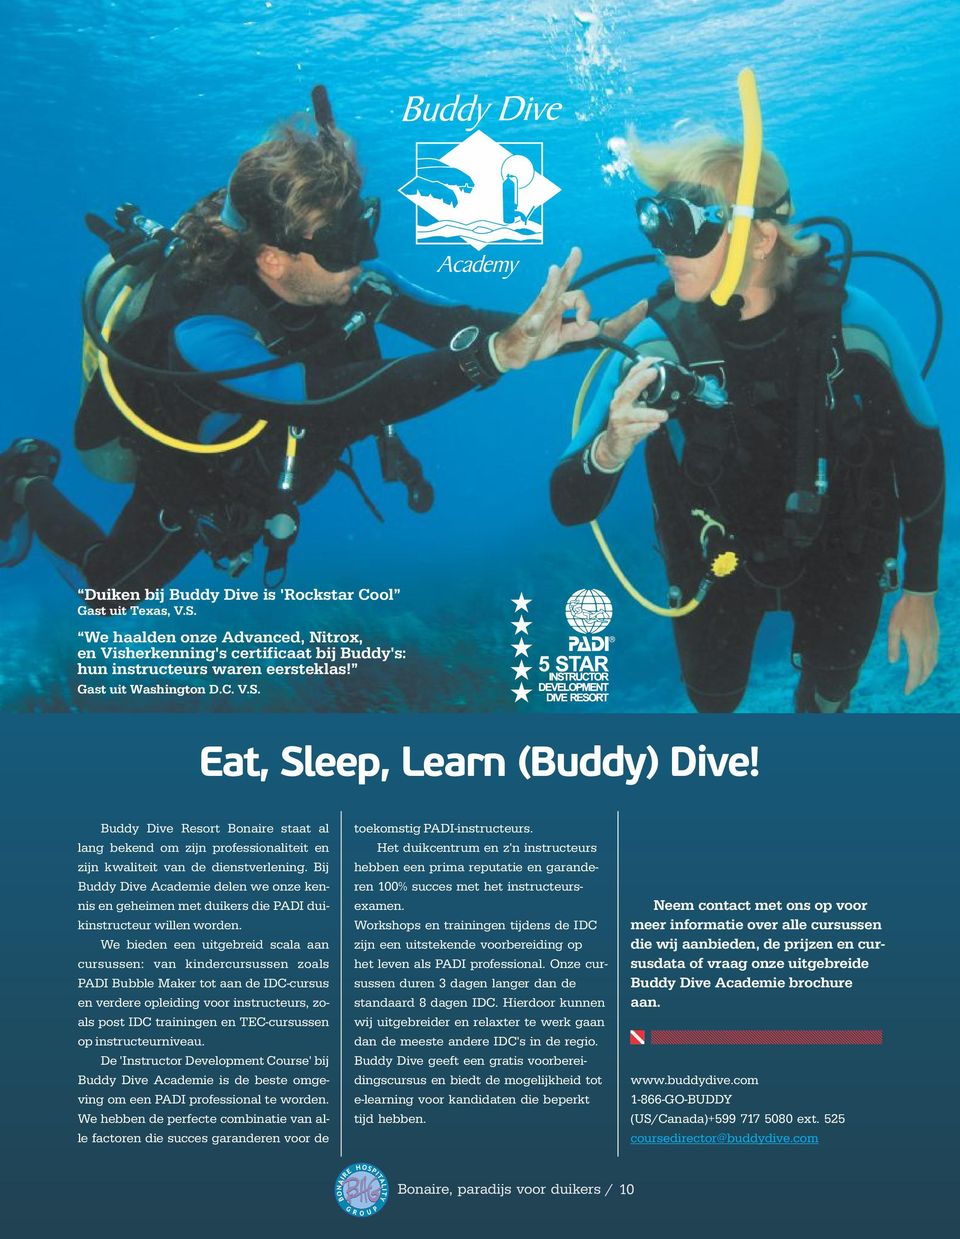 Bij Buddy Dive Academie delen we onze kennis en geheimen met duikers die PADI duikinstructeur willen worden.